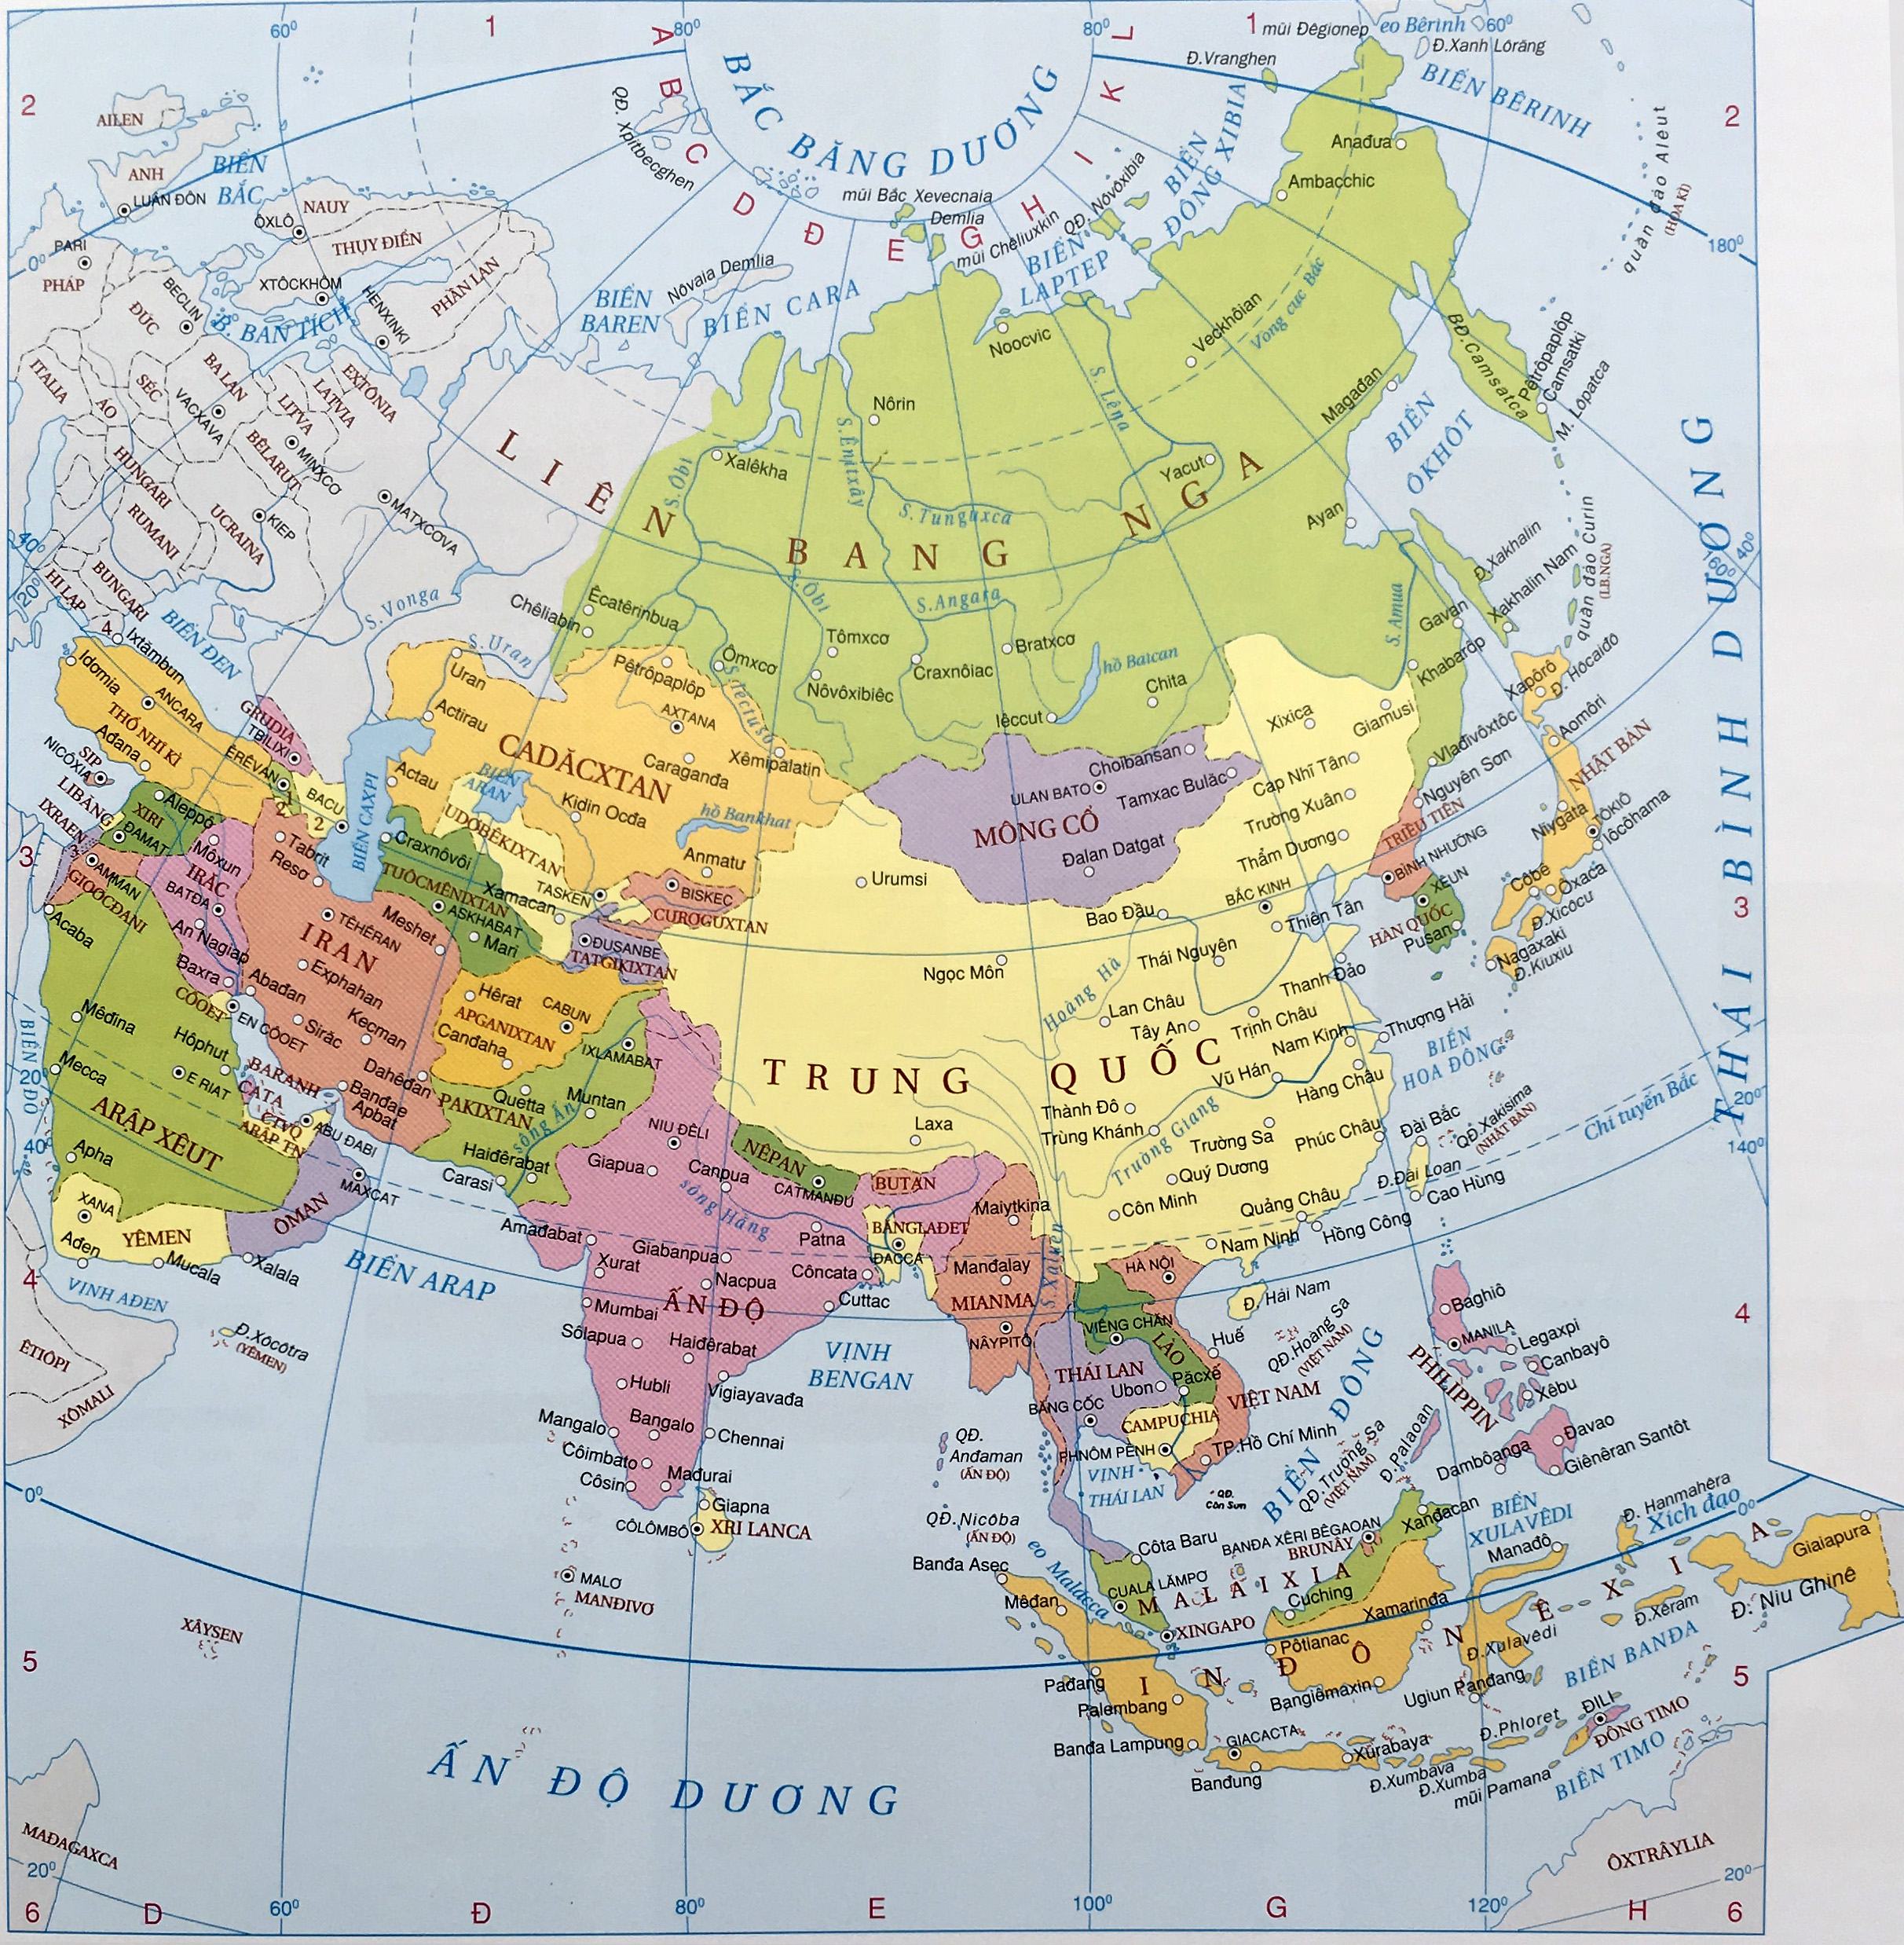 Bản đồ châu Á 2024 rực rỡ với sự phát triển nhanh chóng và đa dạng của các khu vực. Từ Trung Quốc đến Ấn Độ, đến Nhật Bản và Việt Nam, mỗi nước đều có những đóng góp đáng kể vào sự phát triển kinh tế và xã hội của khu vực này. Hãy đón xem hình ảnh để khám phá rõ hơn!